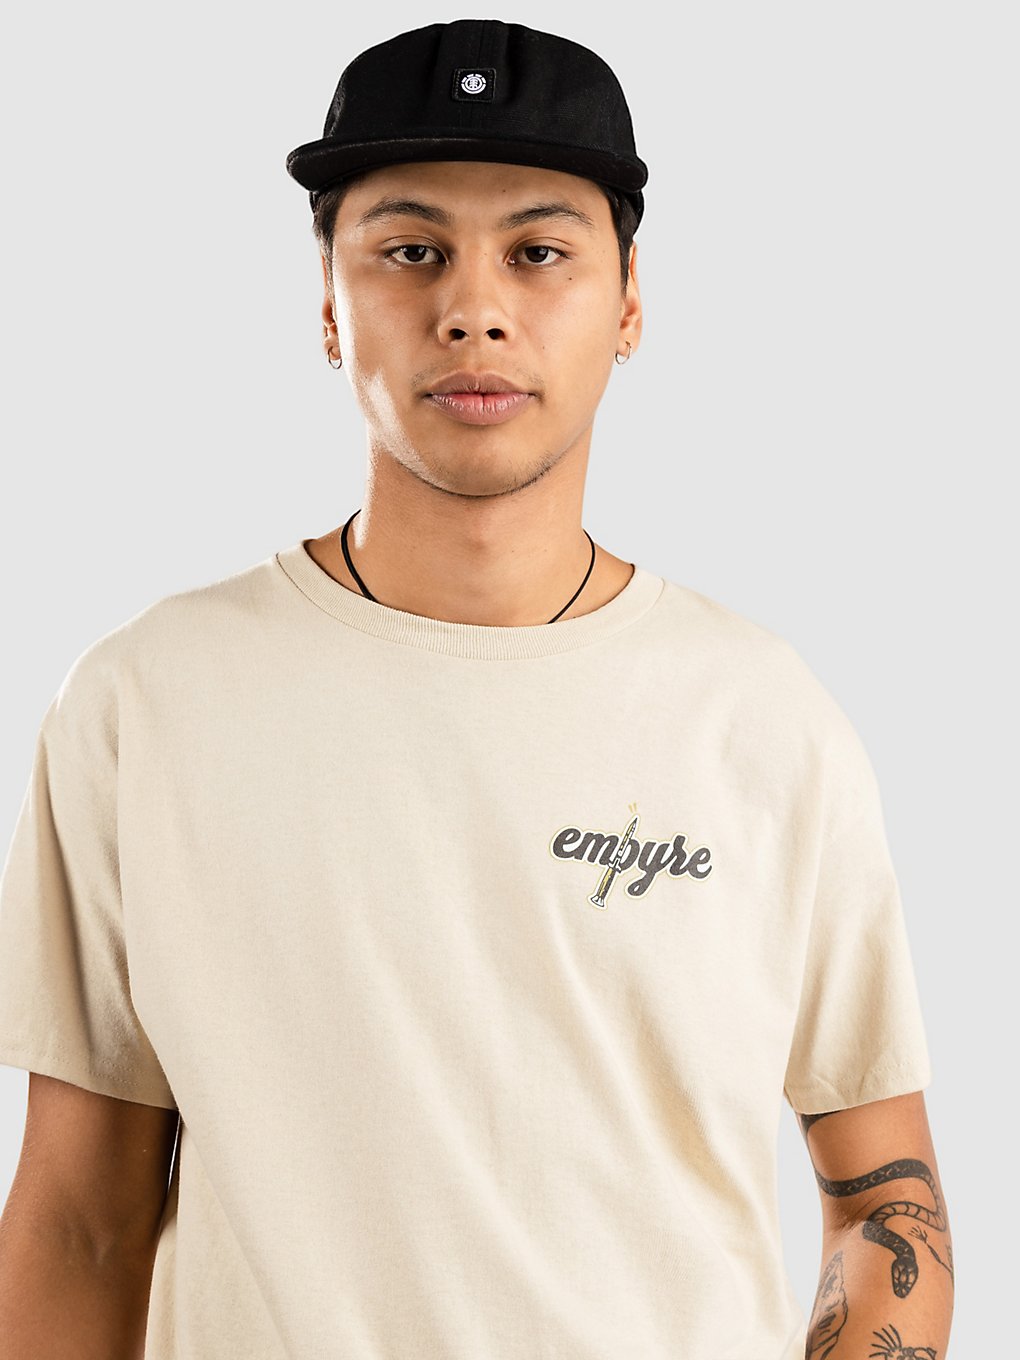 Empyre Knife Empyre T-Shirt sand kaufen